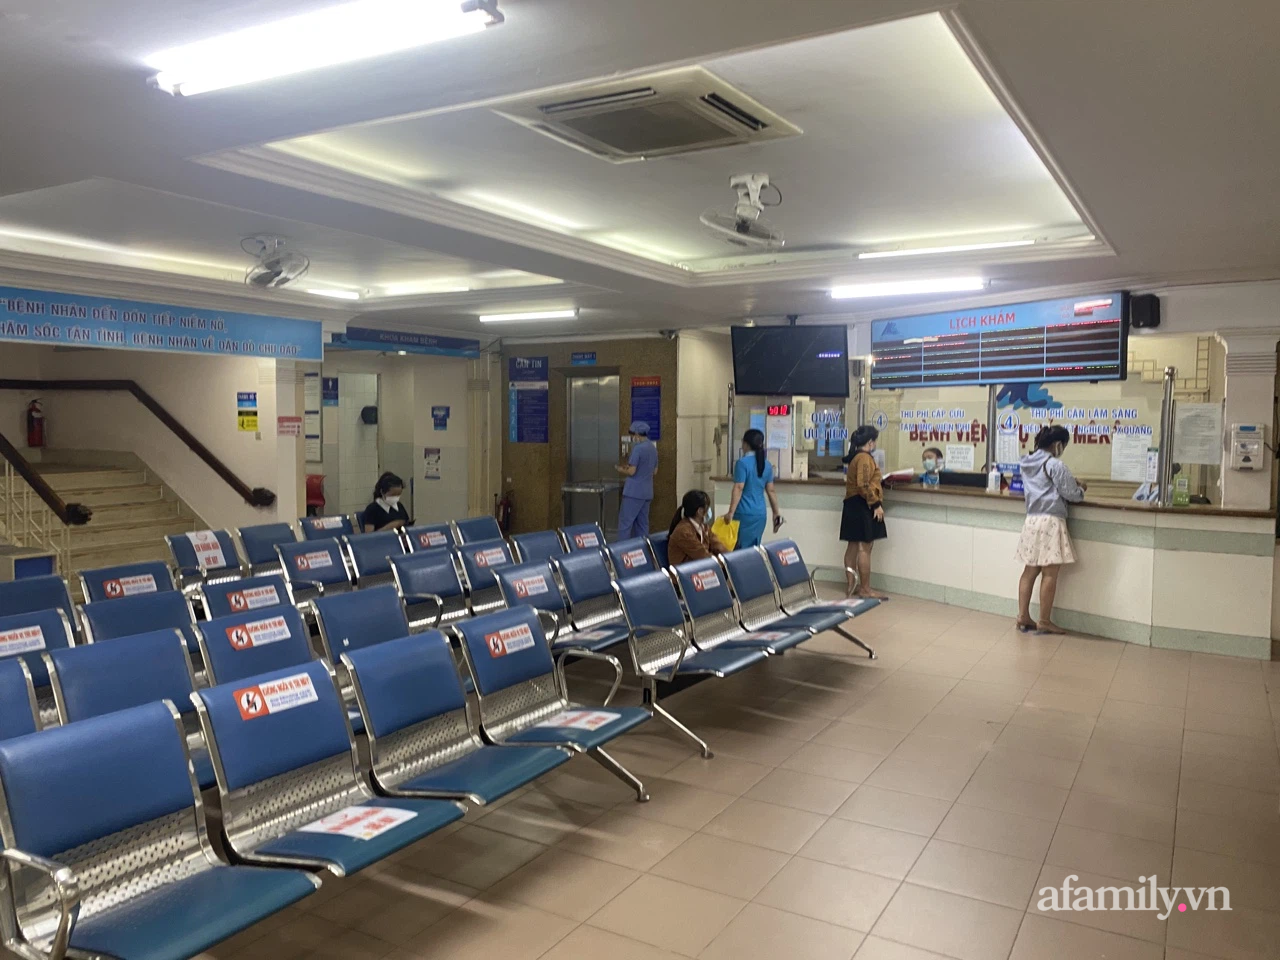 Bệnh viện Phụ sản Mê Kông, Bệnh viện Nhi đồng Thành phố - nơi chăm sóc y tế chuyên nghiệp và tận tâm. Hình ảnh phong tỏa đồng thời minh chứng cho sự quyết tâm trong phòng chống dịch bệnh.